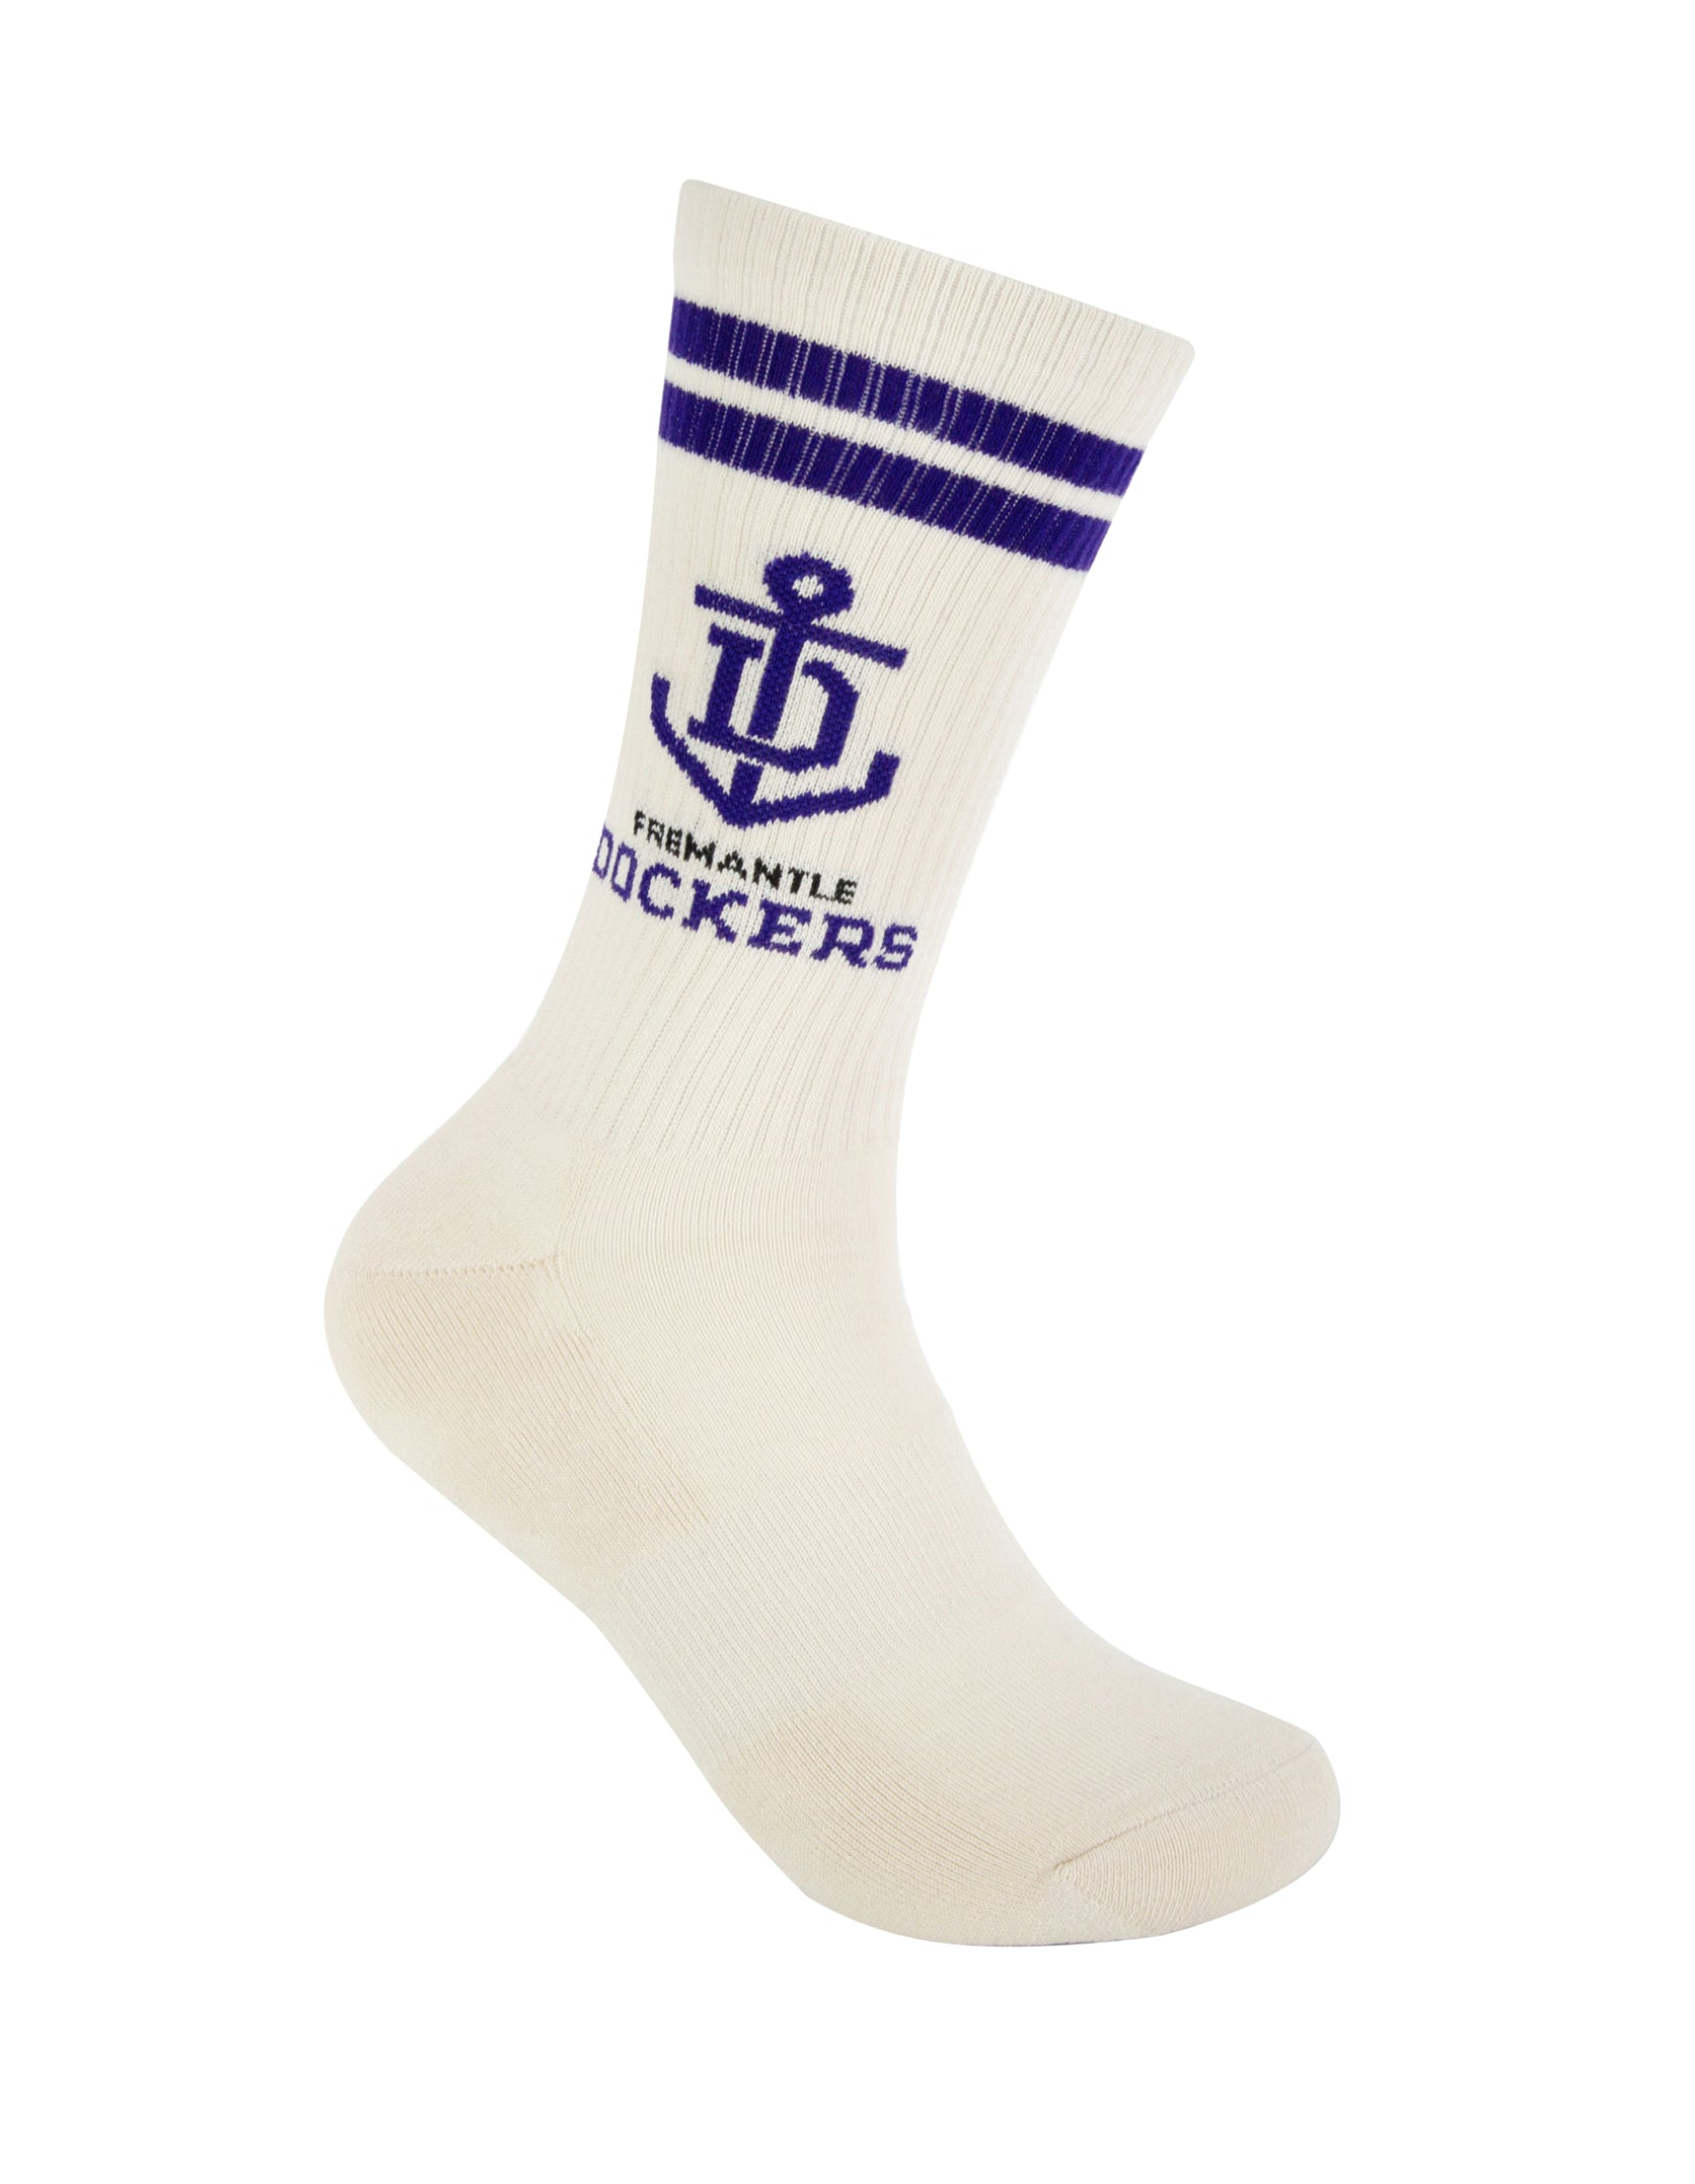 Fremantle Dockers Icons 2 Pack Sneaker Socks